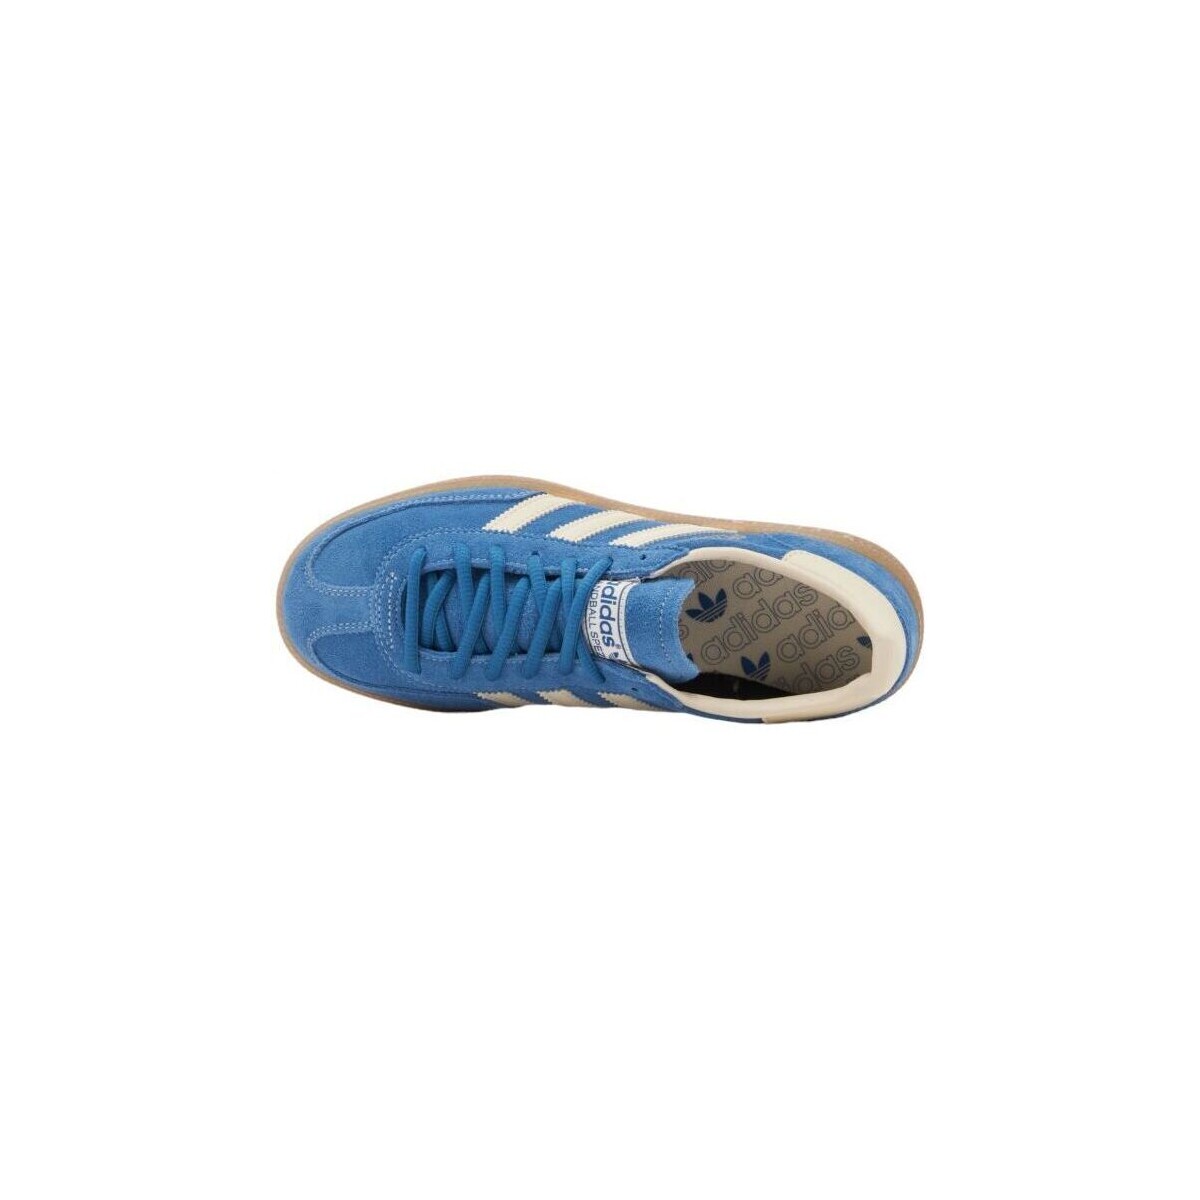 adidas Originals Bleu Baskets Handball Spezial Cobalt Blue/Cream White BCb2Rroc